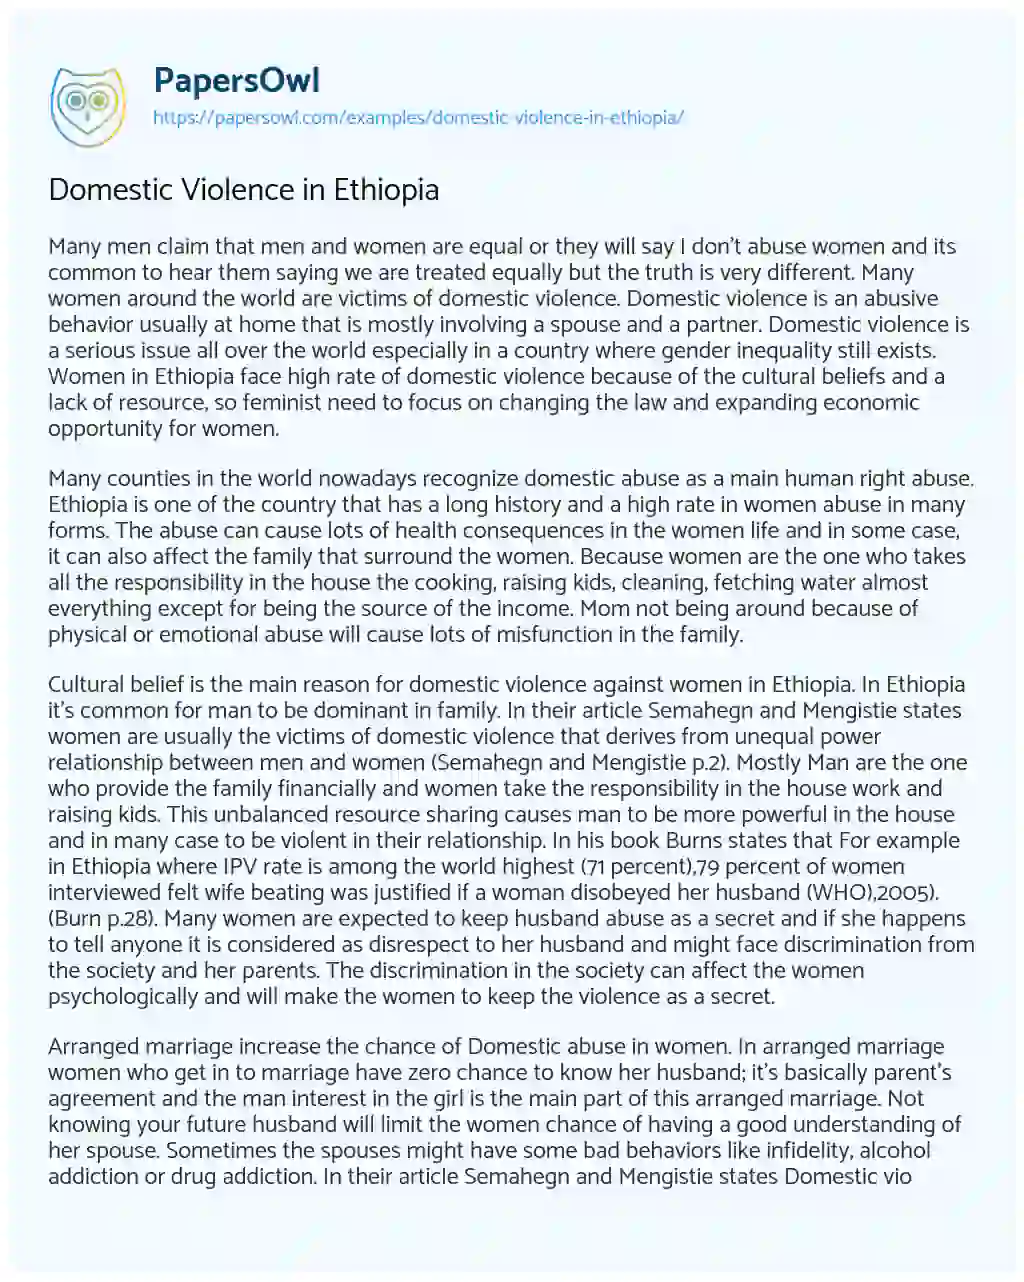 Domestic Violence in Ethiopia essay